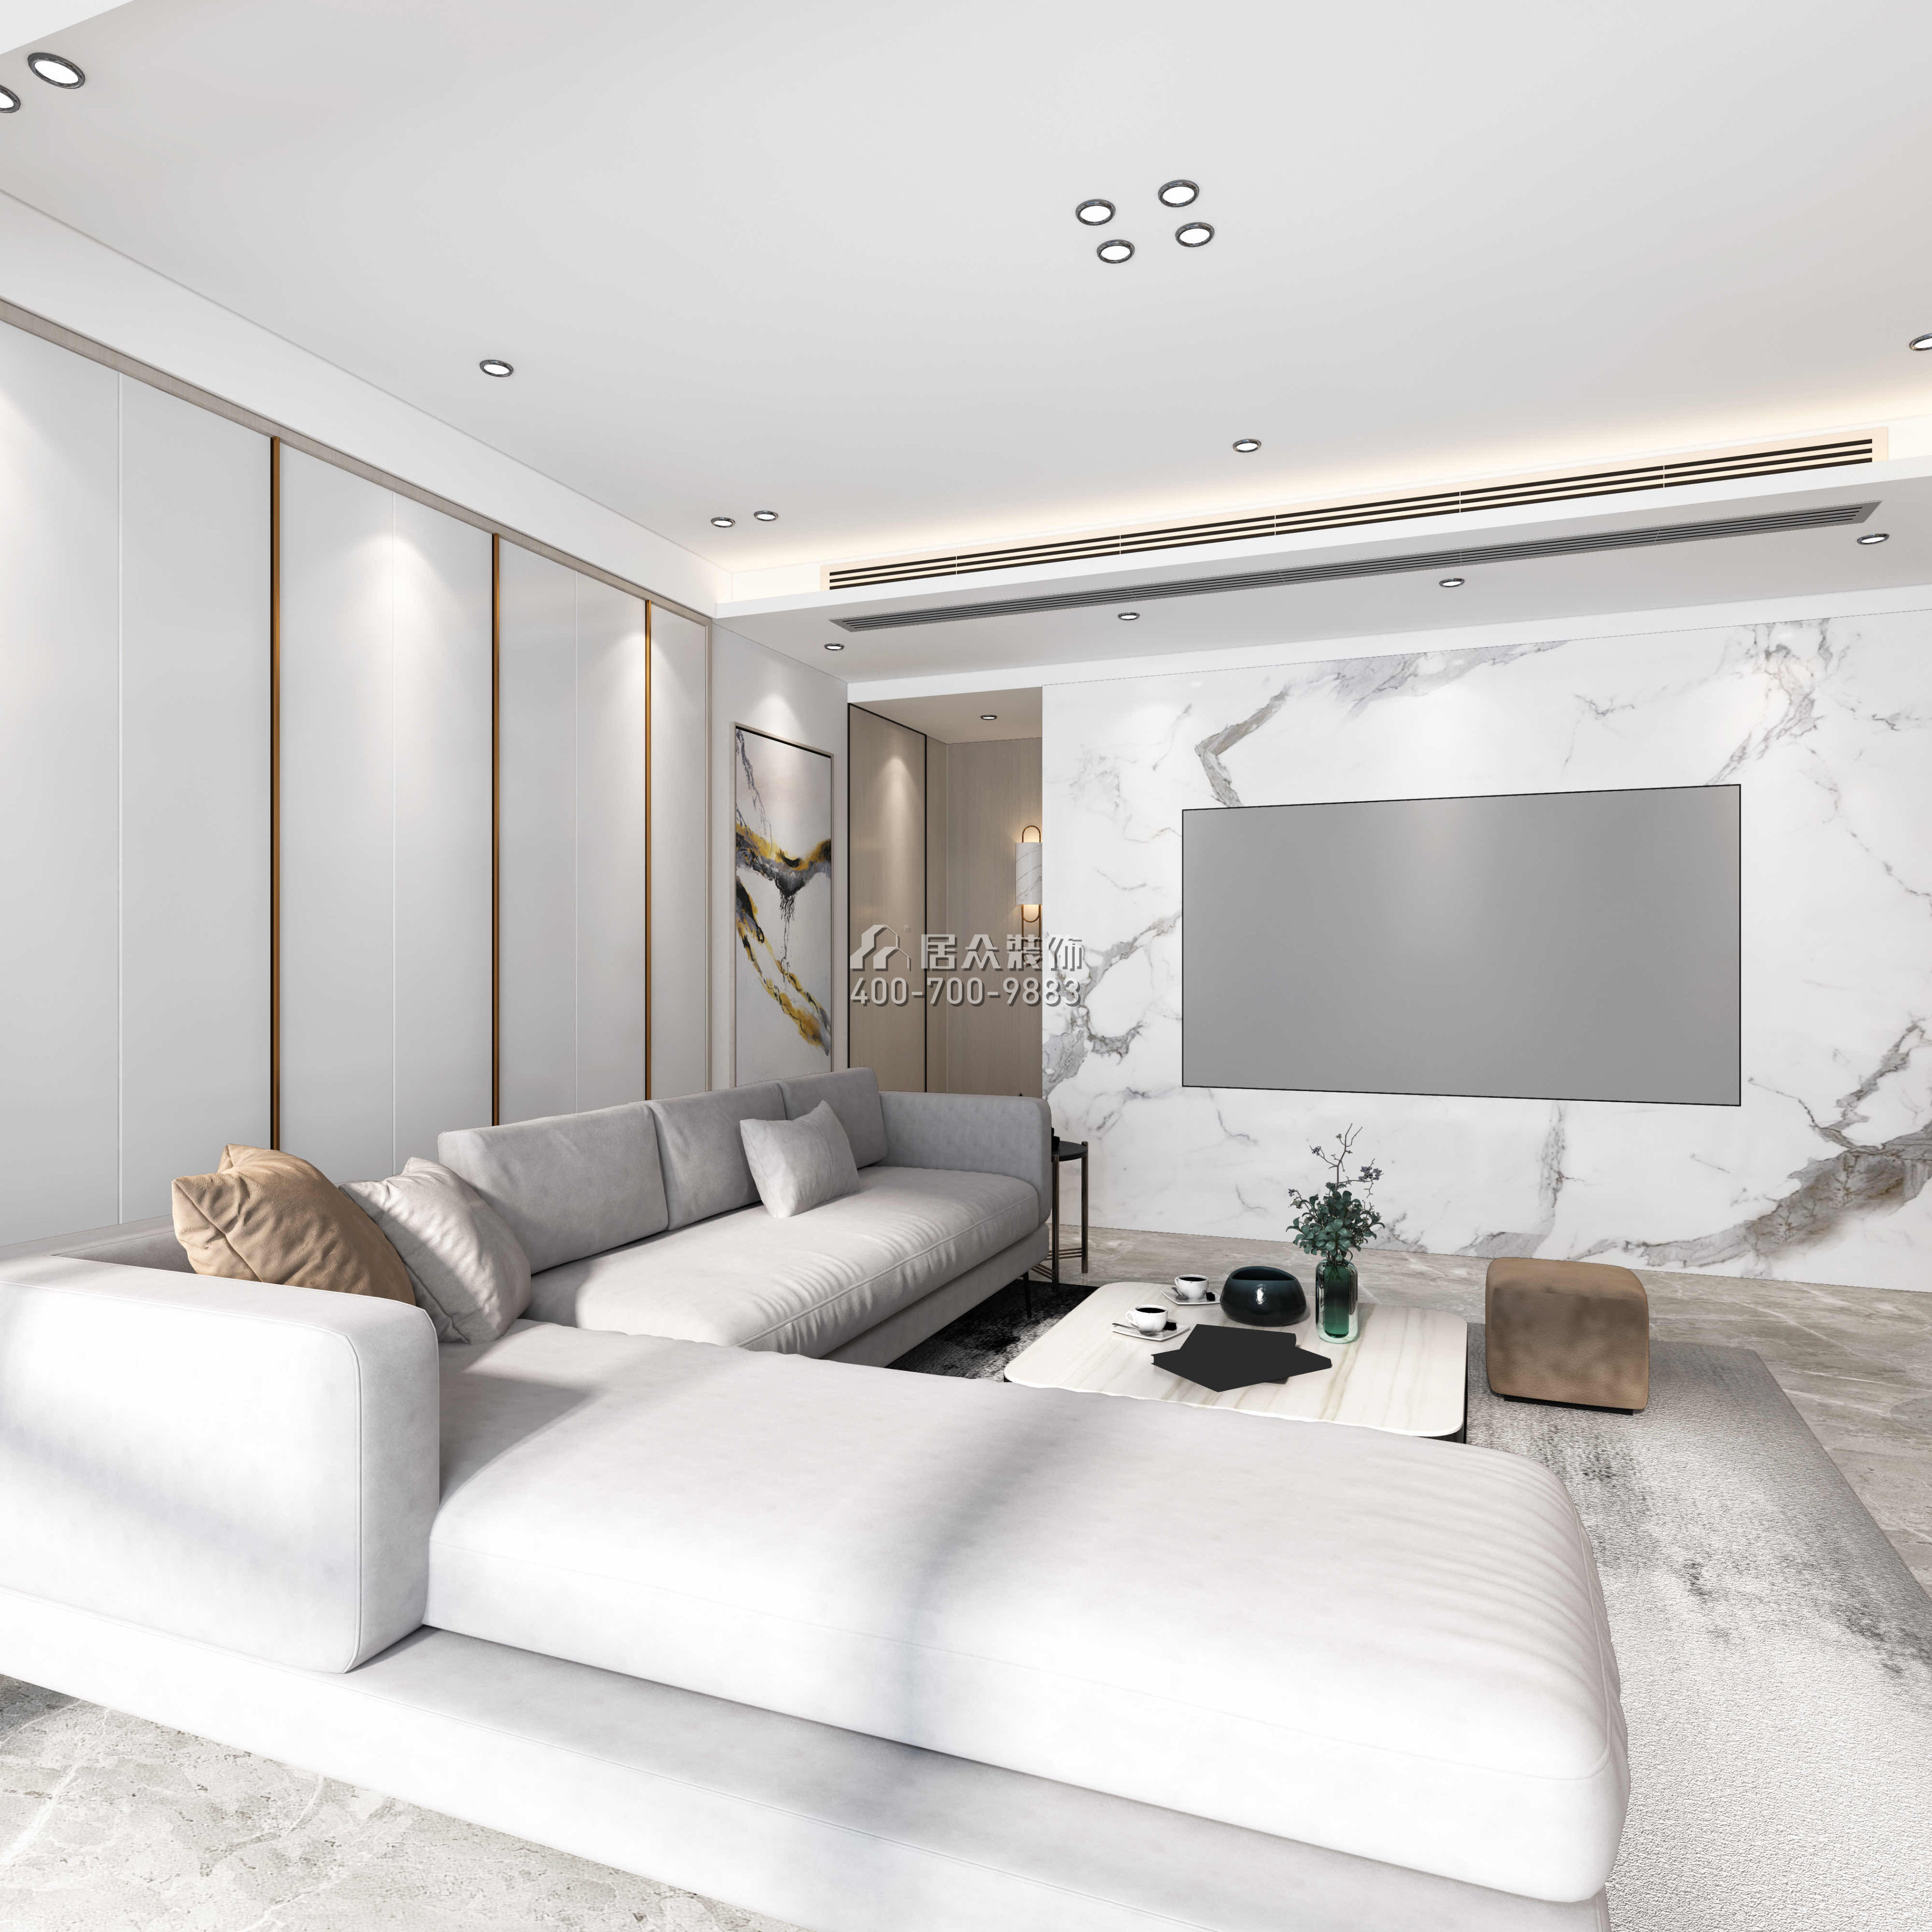 中海銀海灣130平方米現代簡約風格平層戶型客廳裝修效果圖